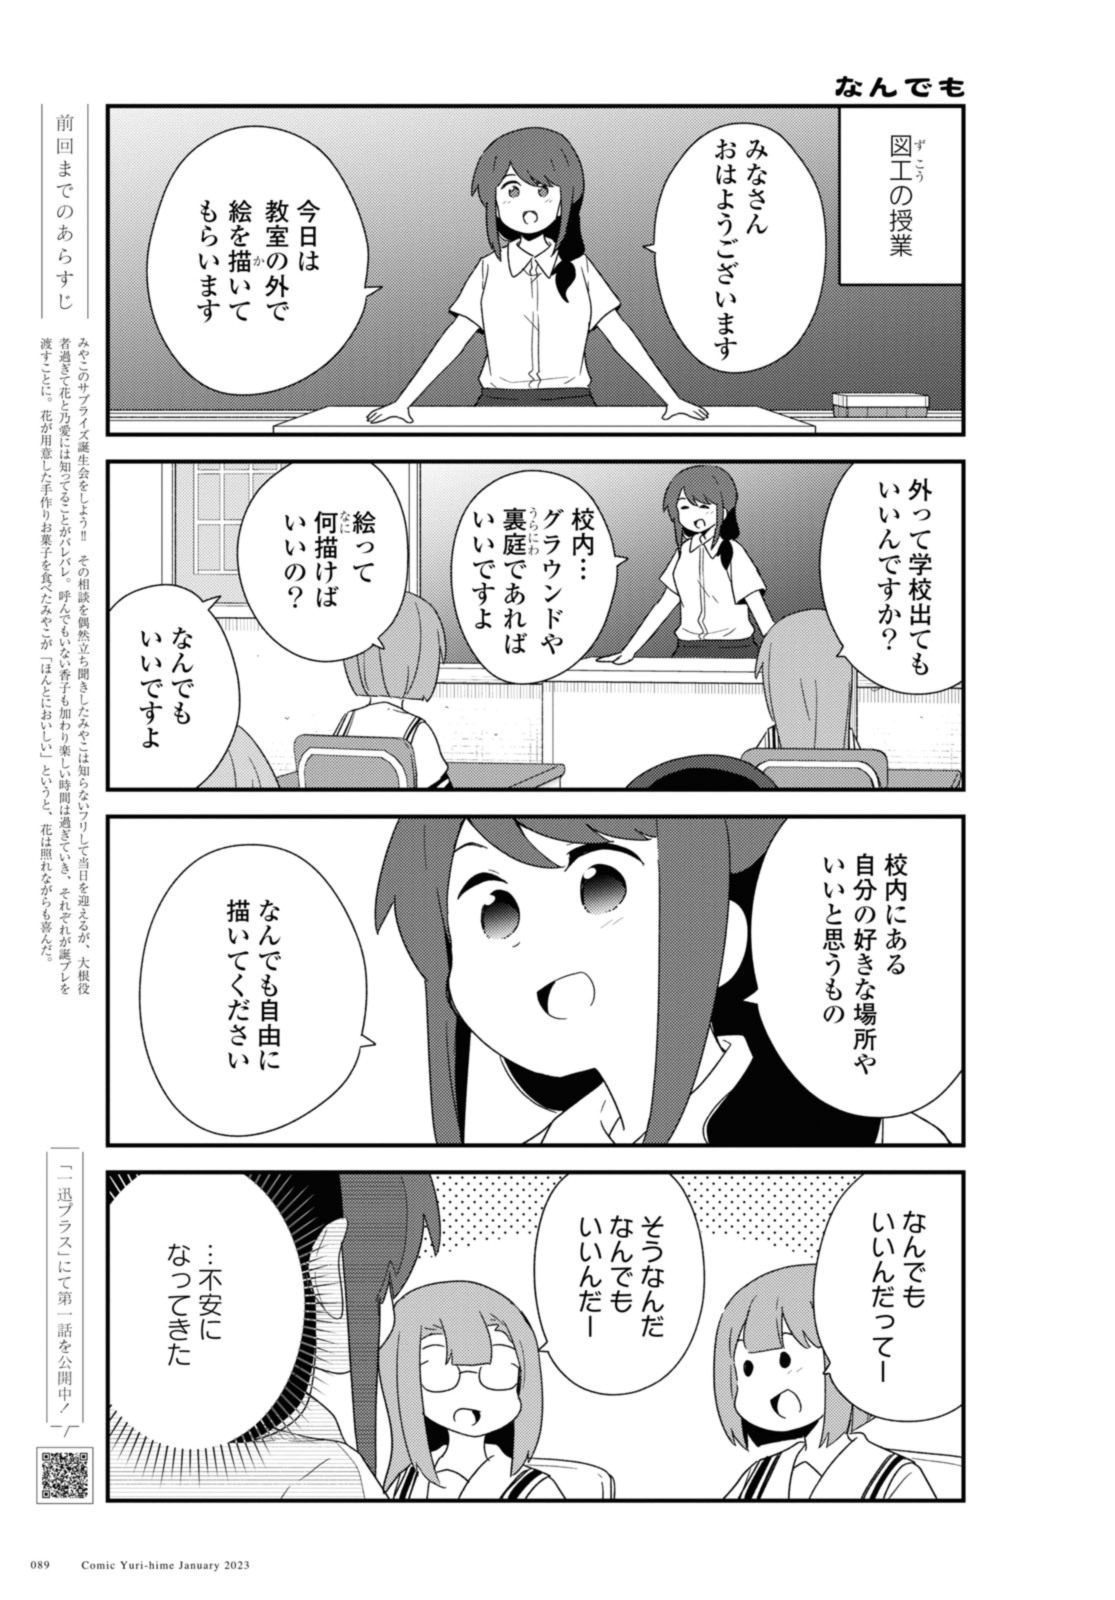 Watashi ni Tenshi ga Maiorita! - Chapter 101 - Page 1